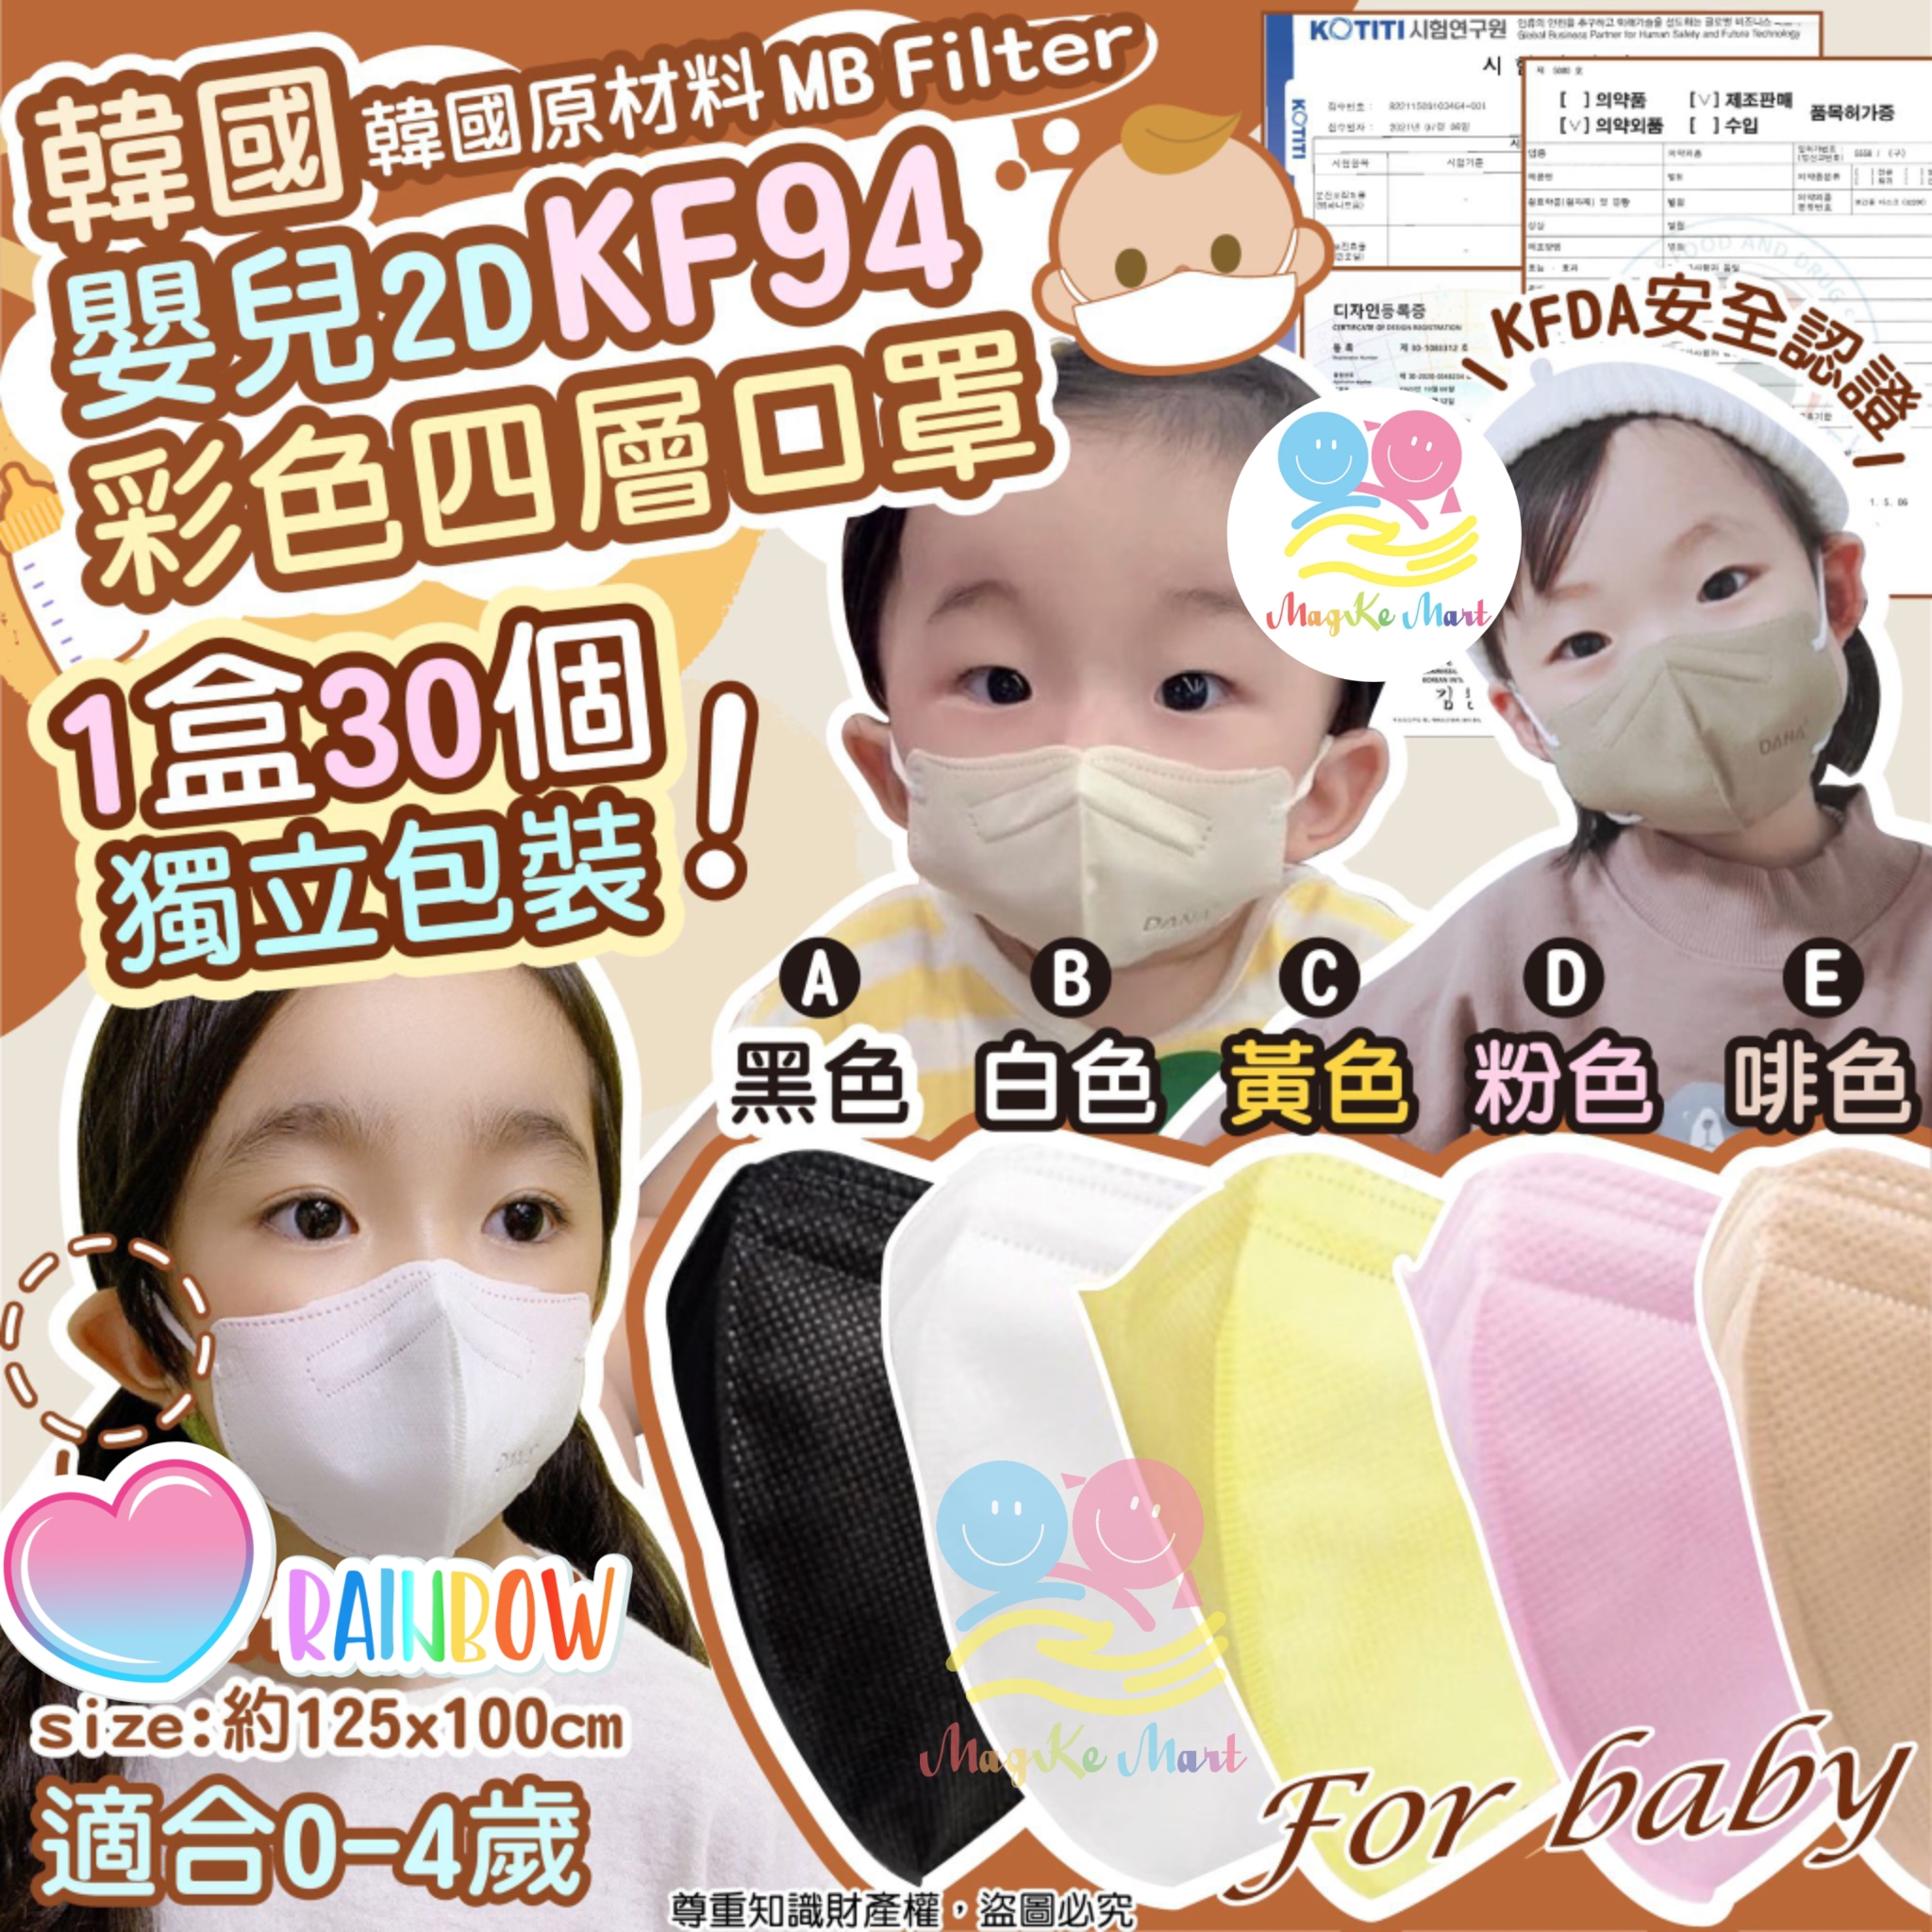 韓國嬰兒 2D KF94 彩色四層口罩(1盒30個)(獨立包裝) (C) 黃色